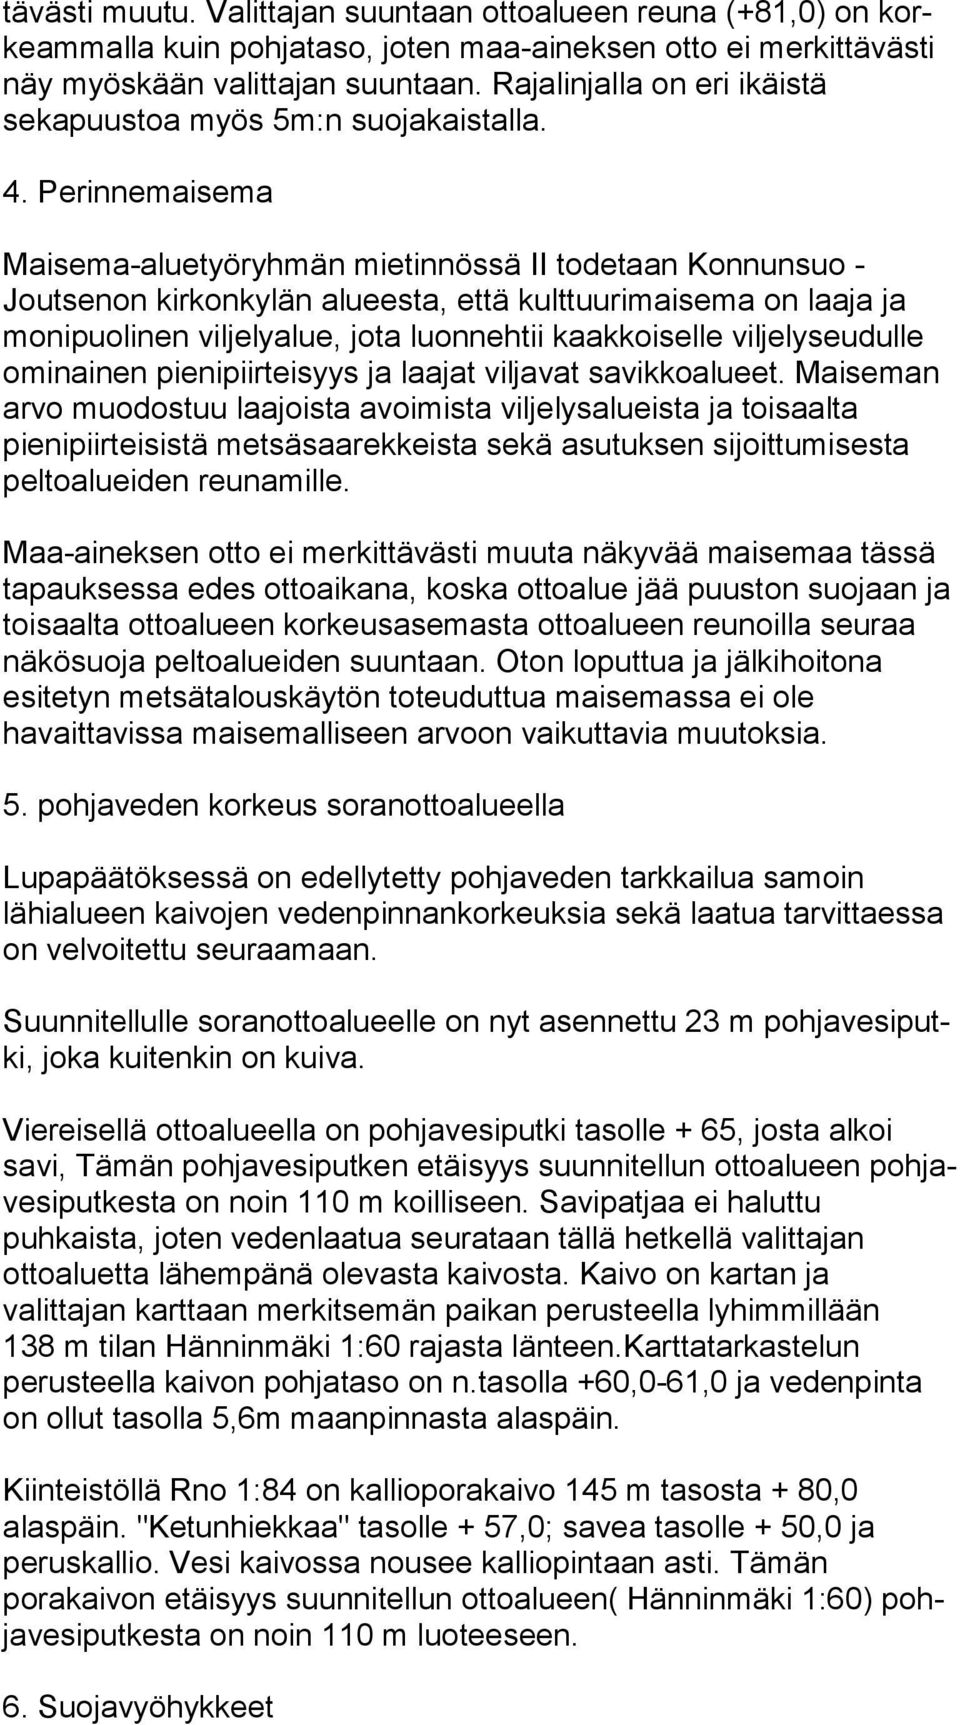 Perinnemaisema Maisema-aluetyöryhmän mietinnössä II todetaan Kon nun suo - Joutsenon kirkonkylän alueesta, että kulttuurimaisema on laaja ja monipuolinen viljelyalue, jota luonnehtii kaak koi sel le